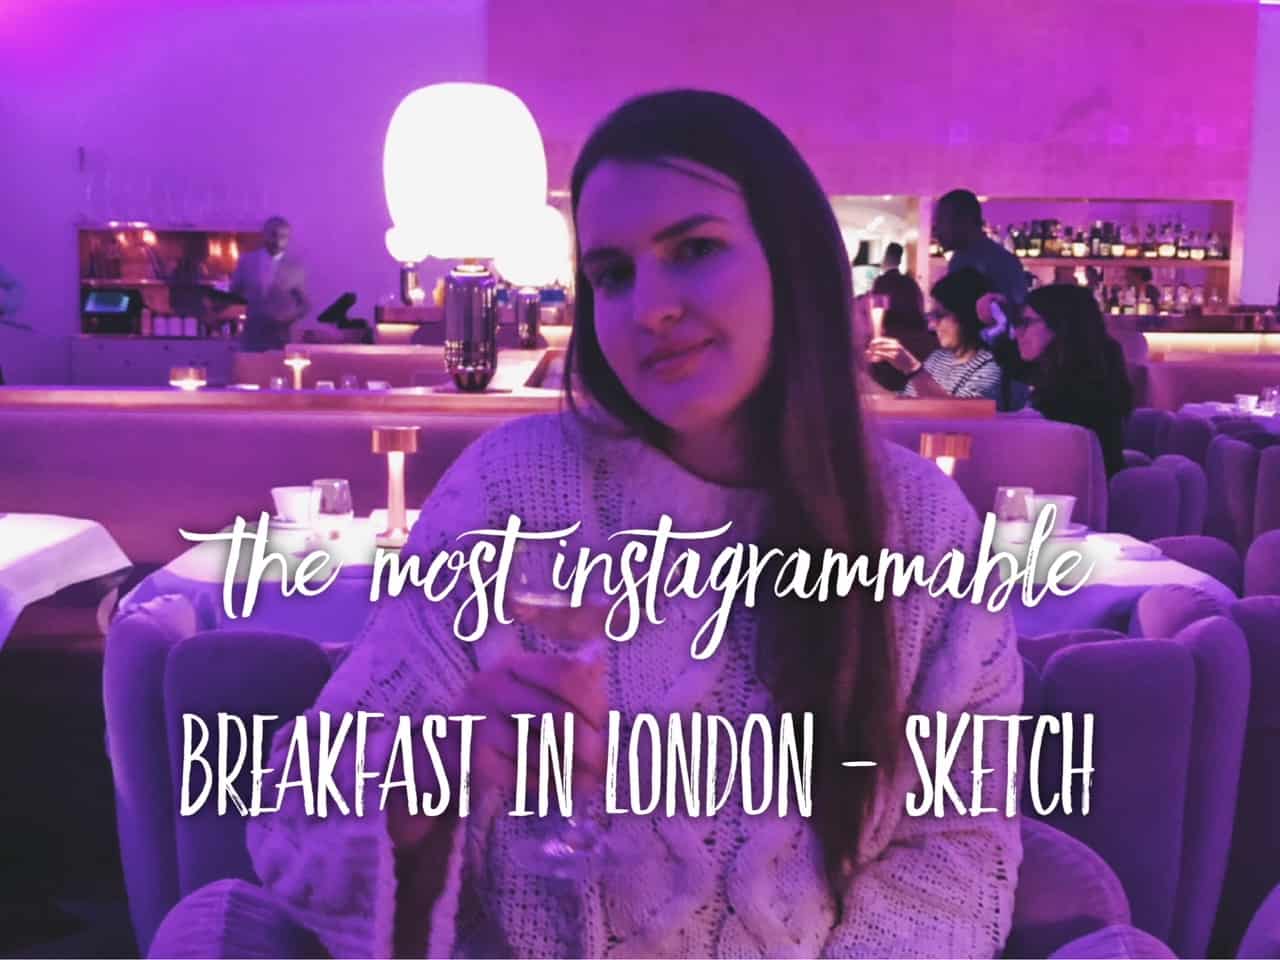 Most instagrammable breakfast in London – sketch Mayfair